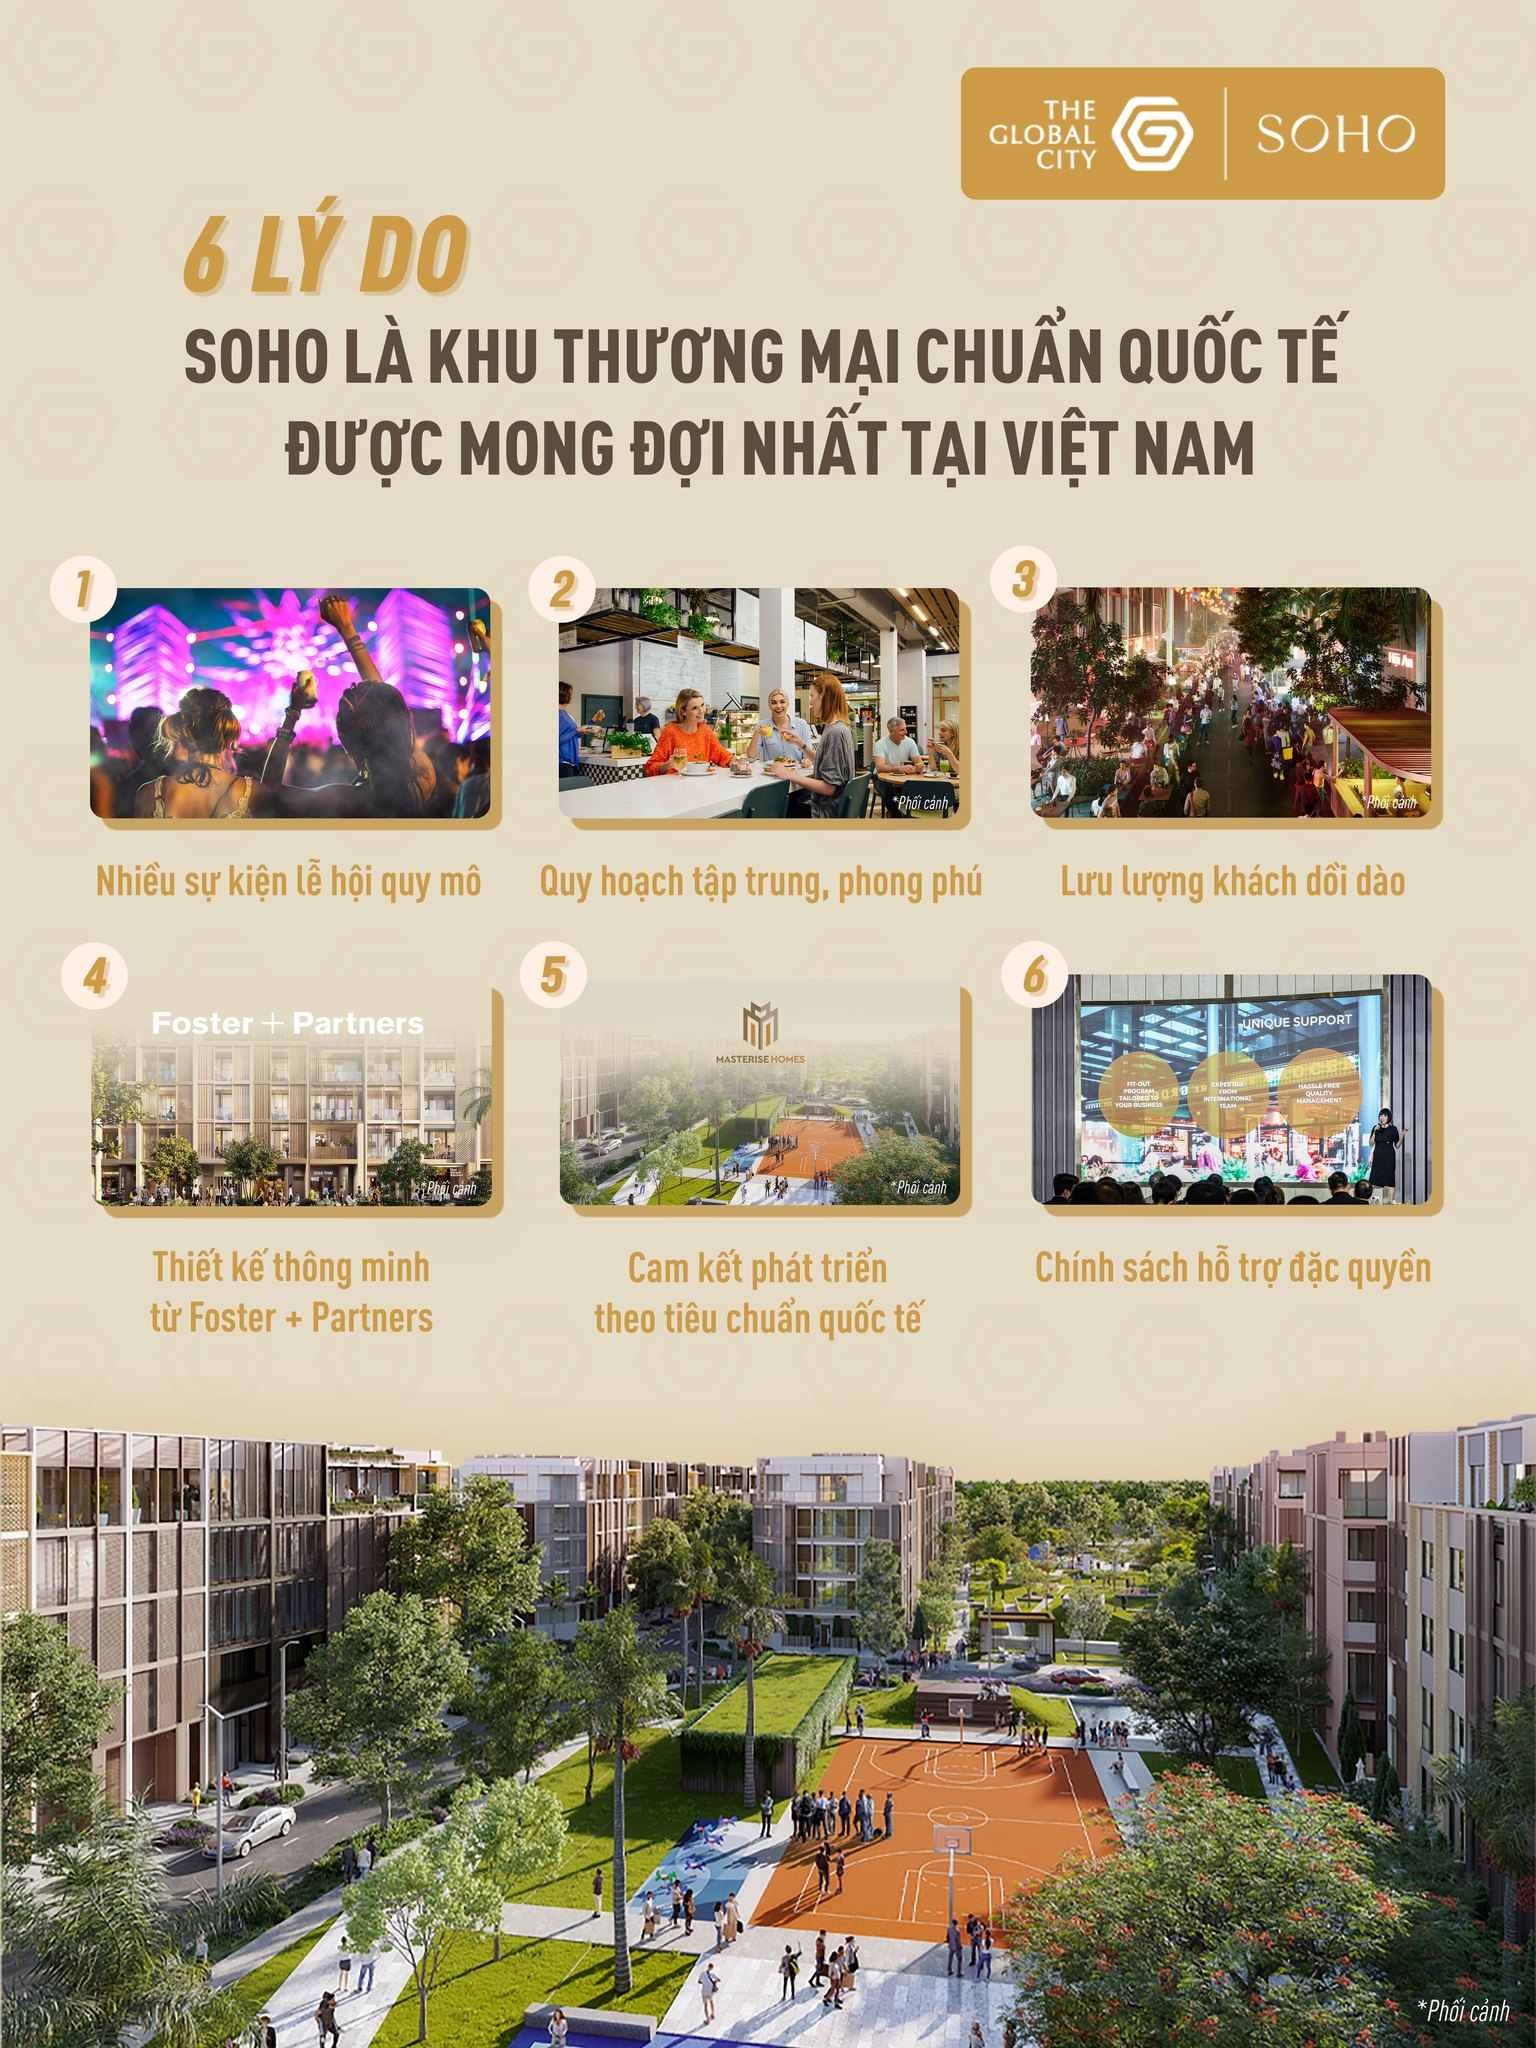 Khu thương mại chuẩn quốc tế tại The Global City - Diện mạo mới của ngành bán lẻ Việt Nam